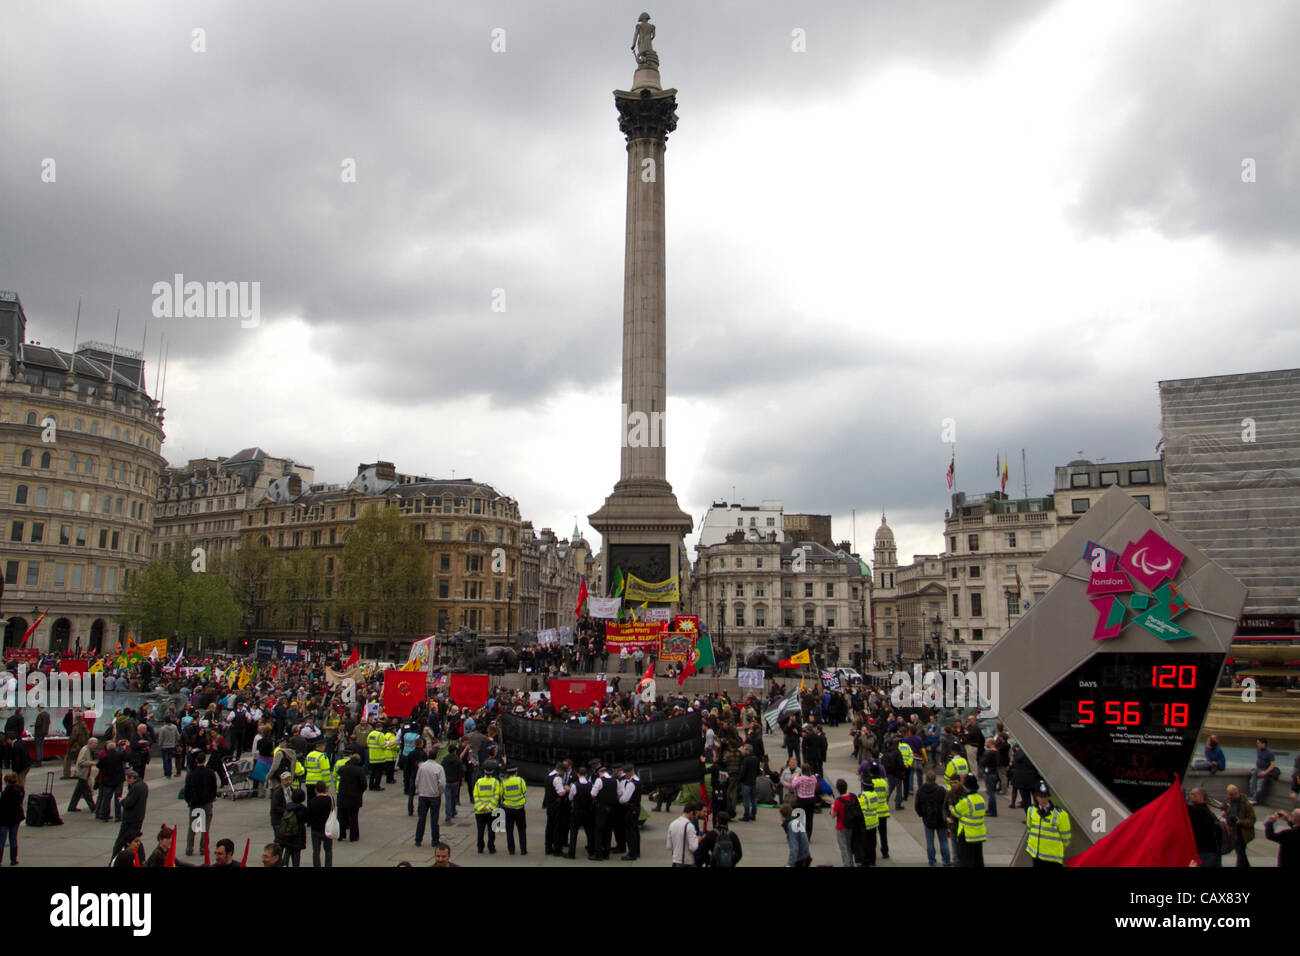 London, UK. 1. Mai 2012. Gewerkschafterinnen und Gewerkschafter, Arbeitnehmer, Gewerkschaften und Gemeinschaften in London für den Maifeiertag März anlässlich der internationalen Tag (alias Maifeiertag) gesammelt. Anhänger marschierten von Clerkenwell Road zum Trafalgar Square in London. Stockfoto